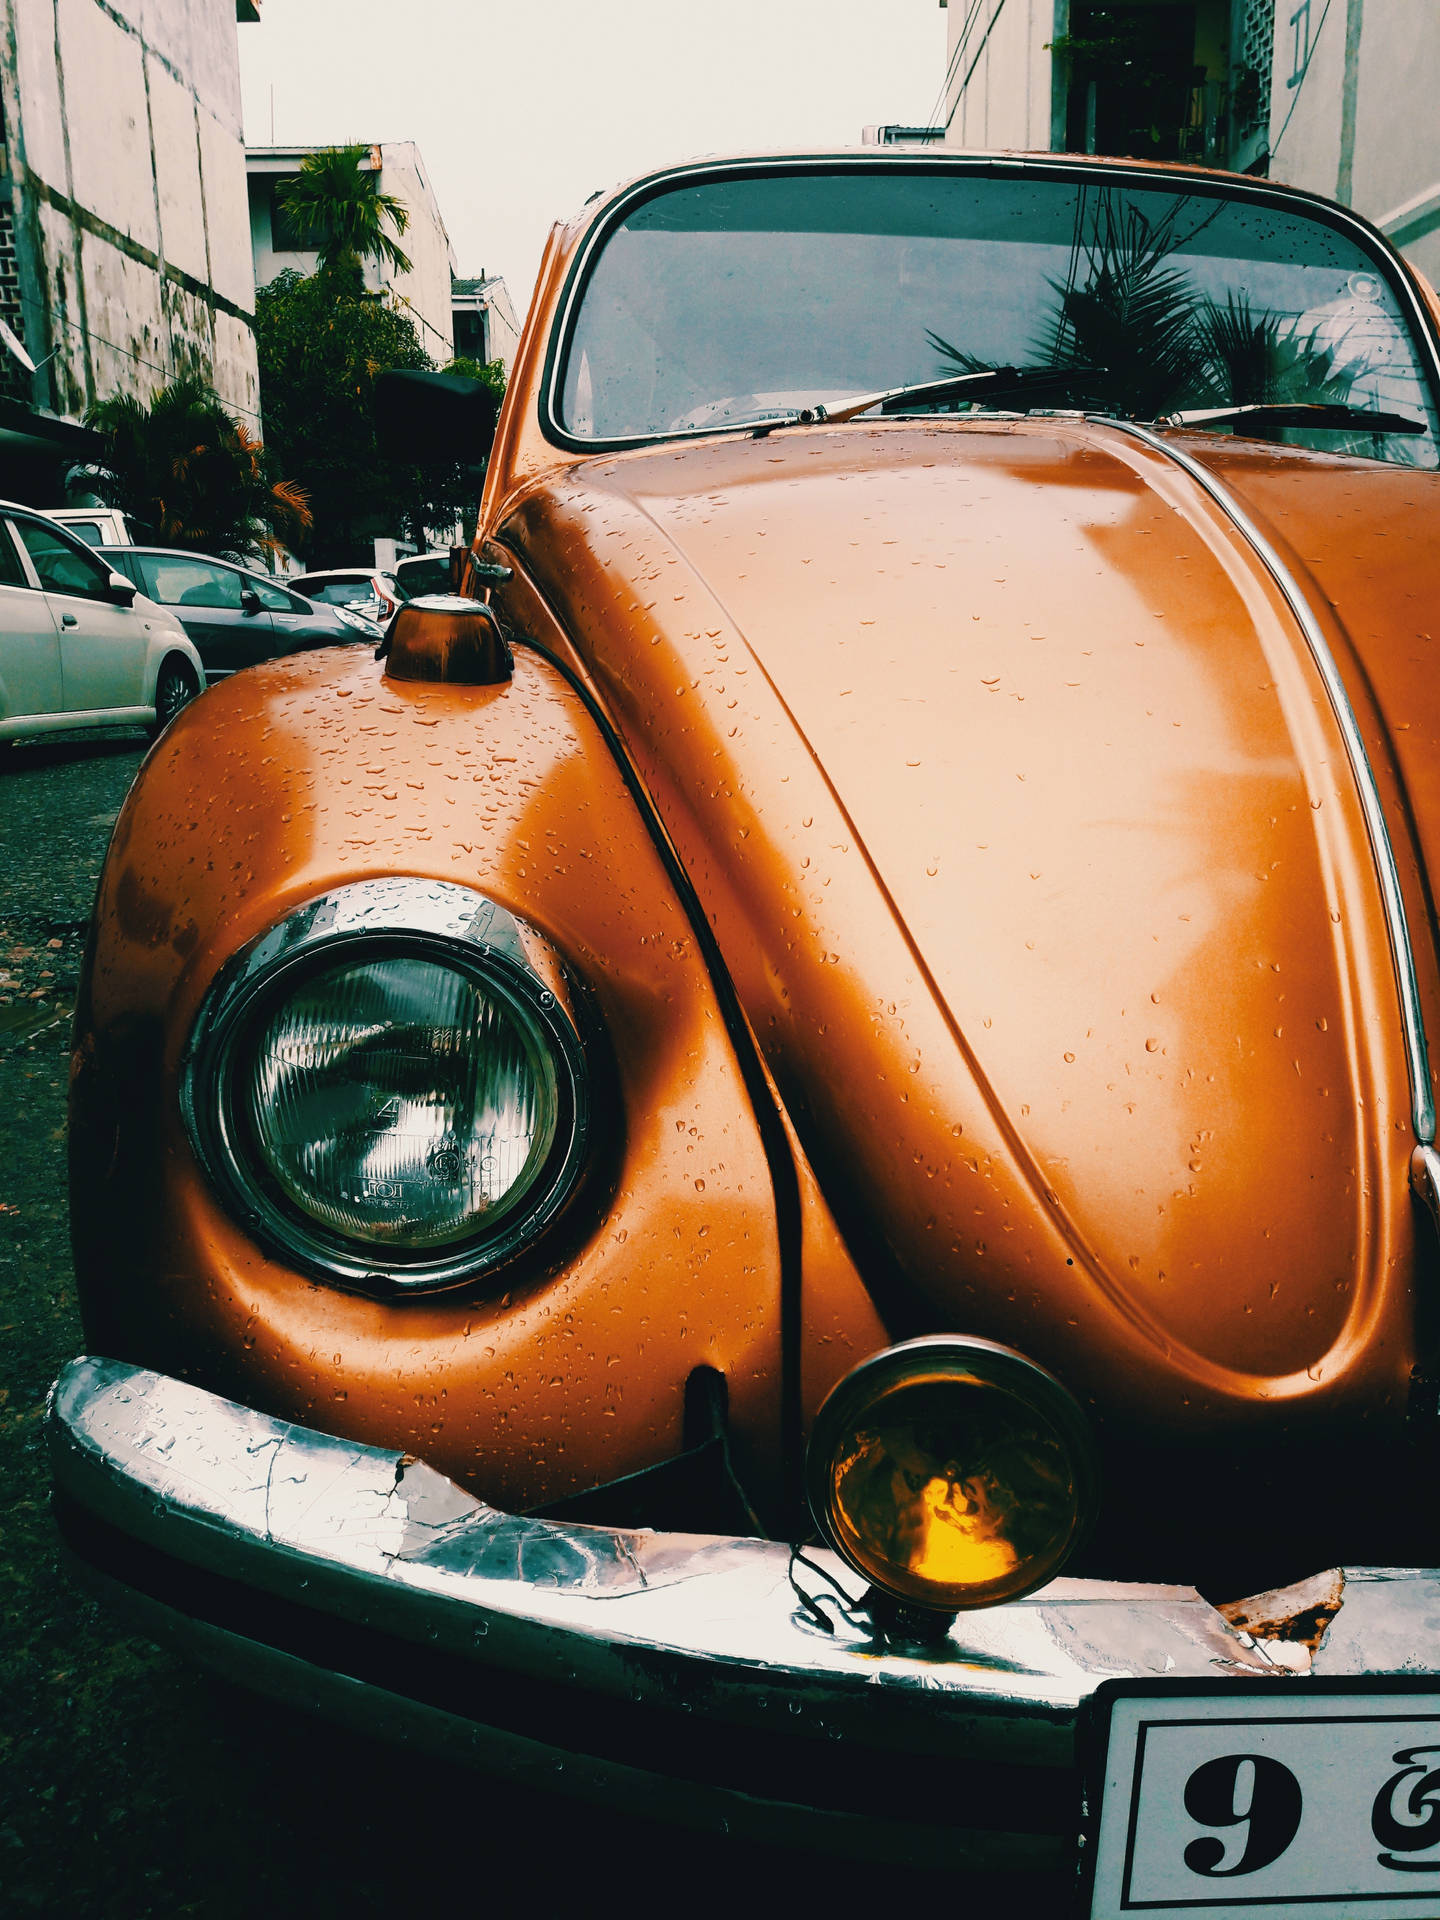 The Classic Volkswagen Beetle Wallpaper